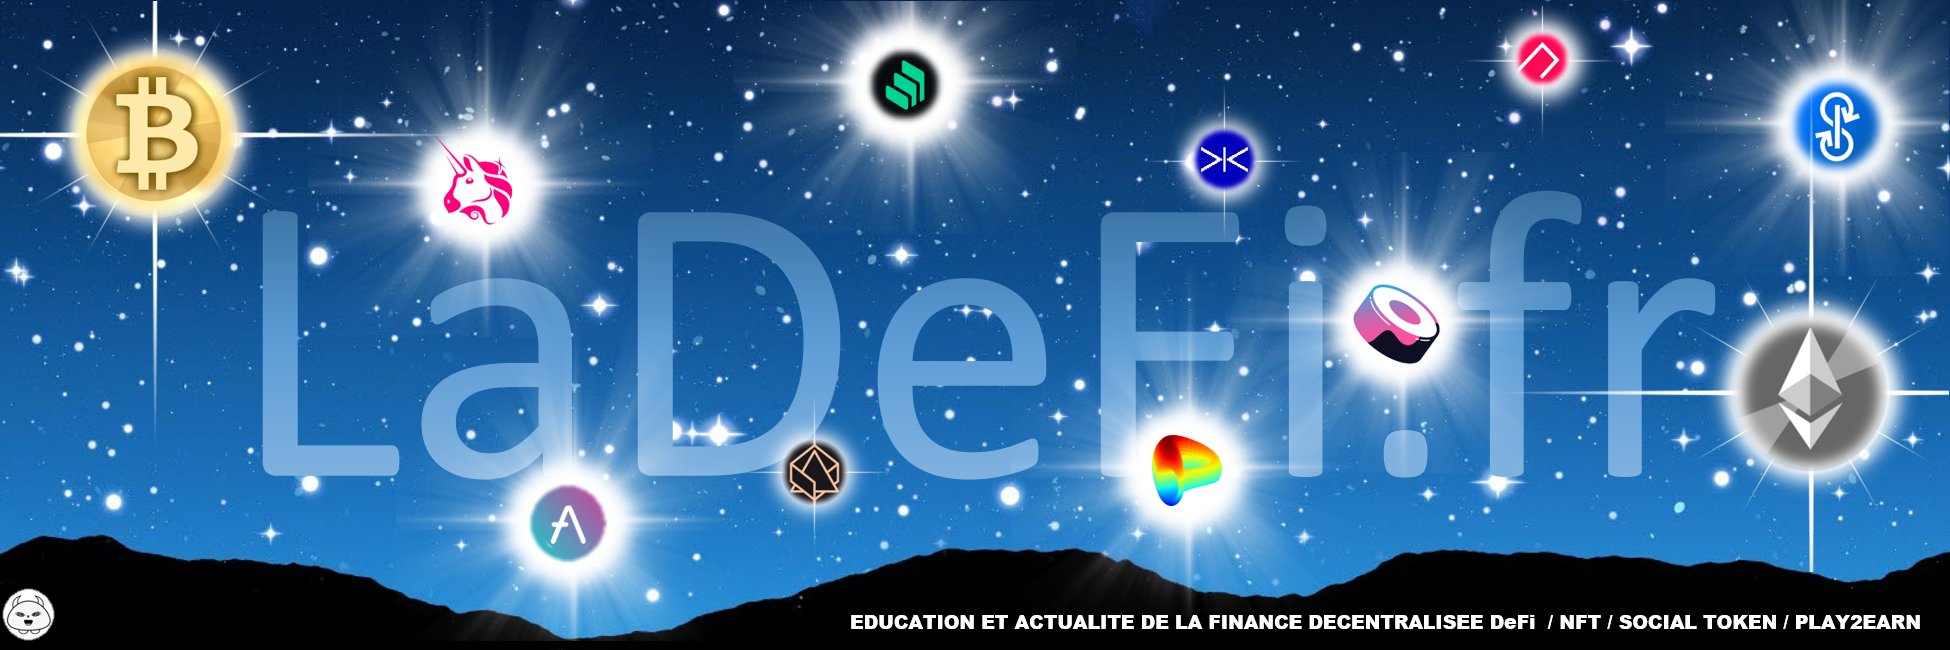 Bannière de la defi .fr finance décentralisée